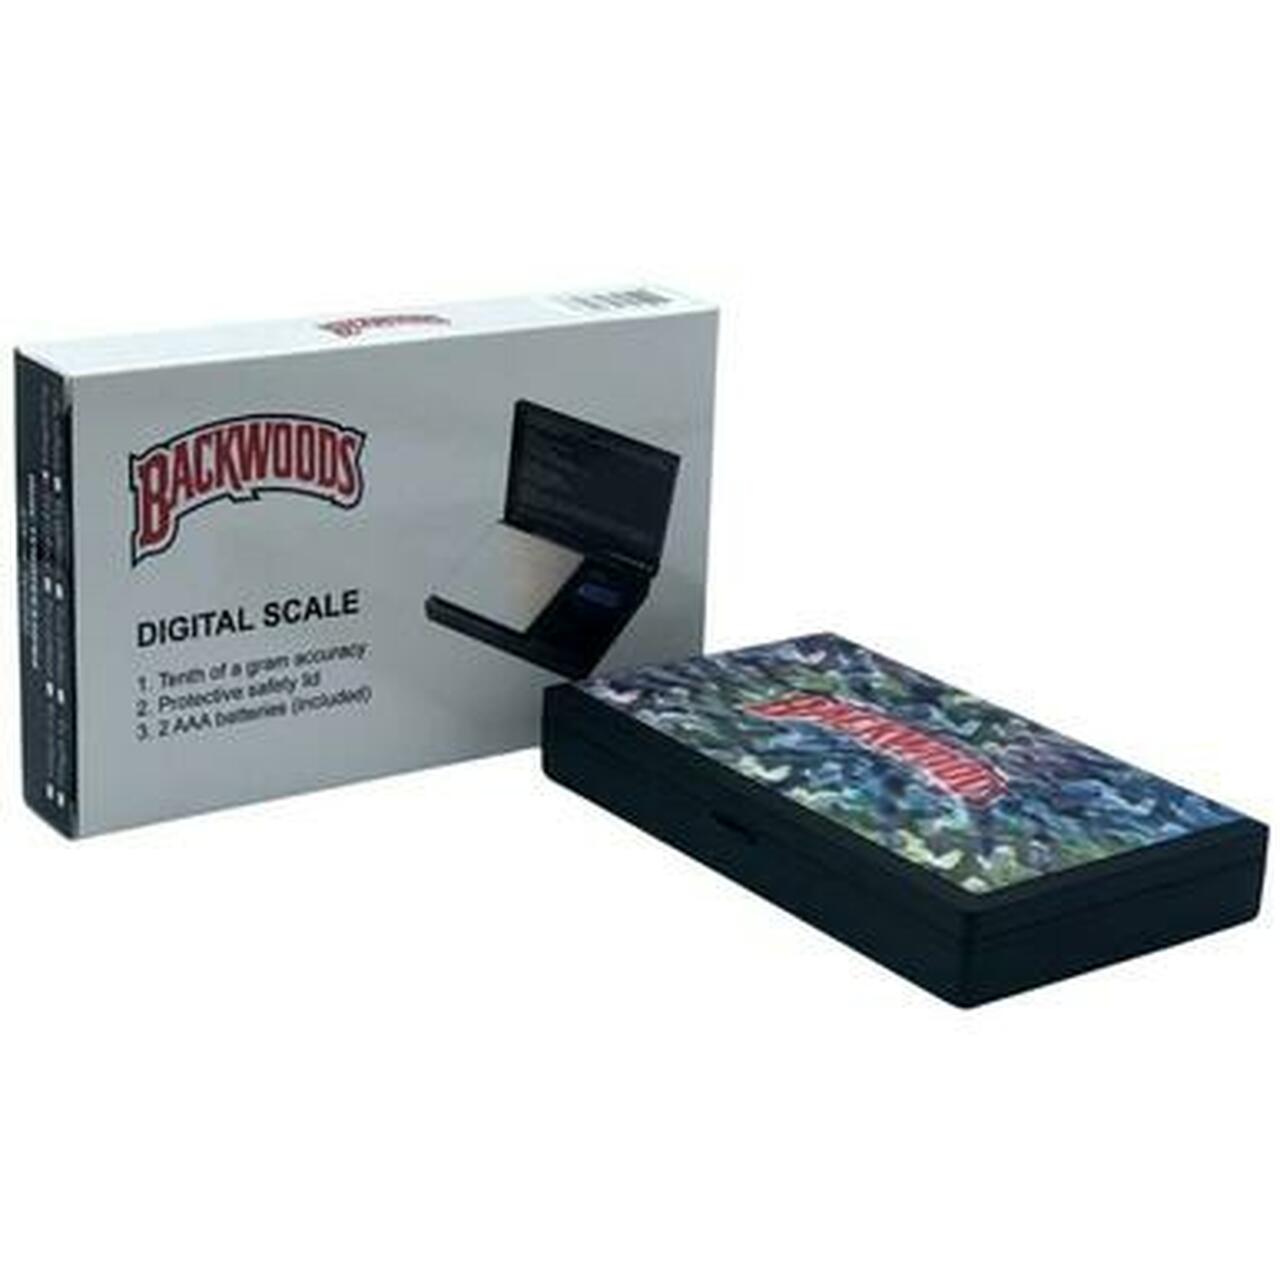 Digital Pocket Scale (Holographic Designed)